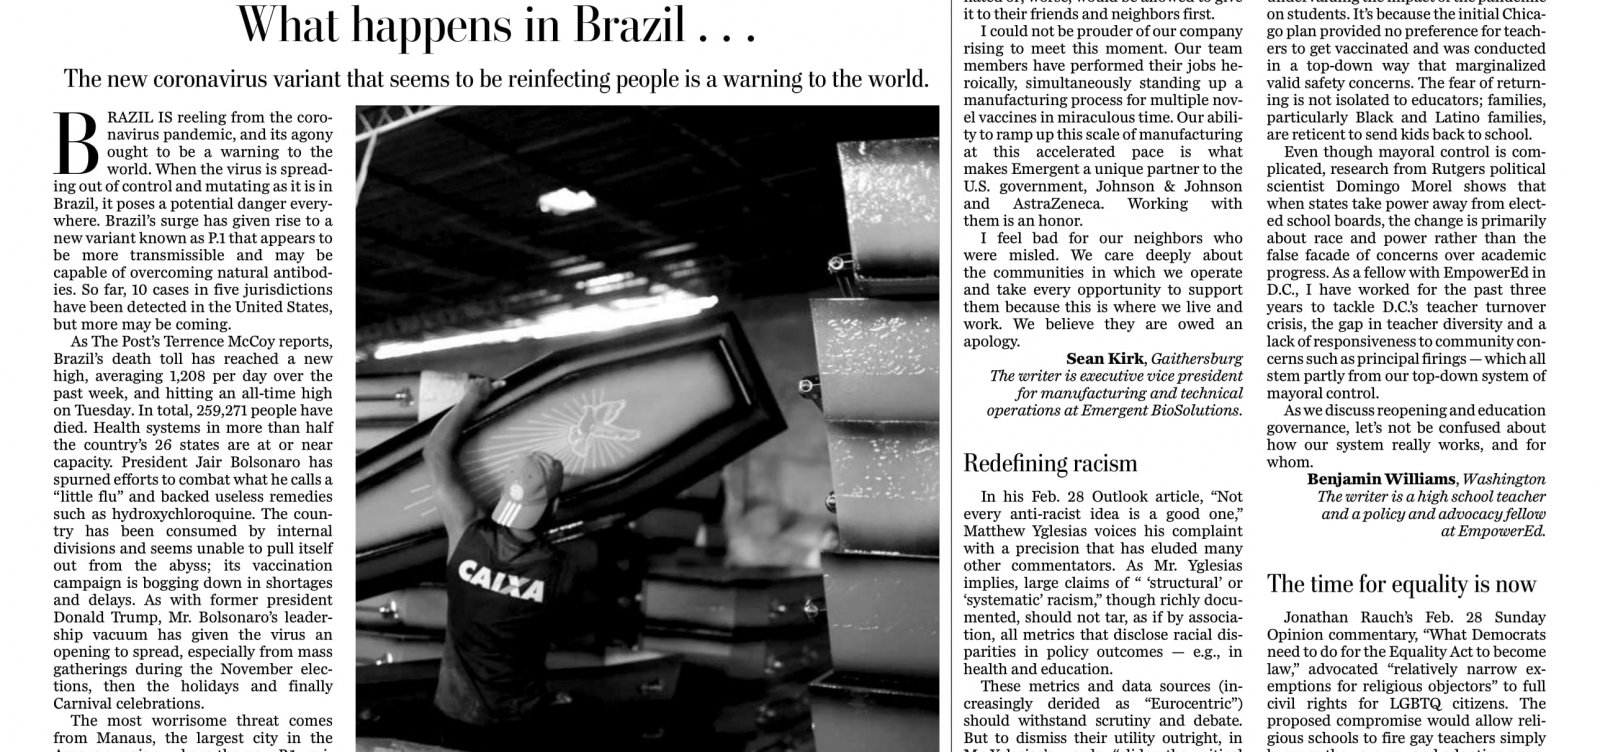 Covid-19 no Brasil: New York Times, The Guardian e Washington Post repercutem crise do país; veja manchetes